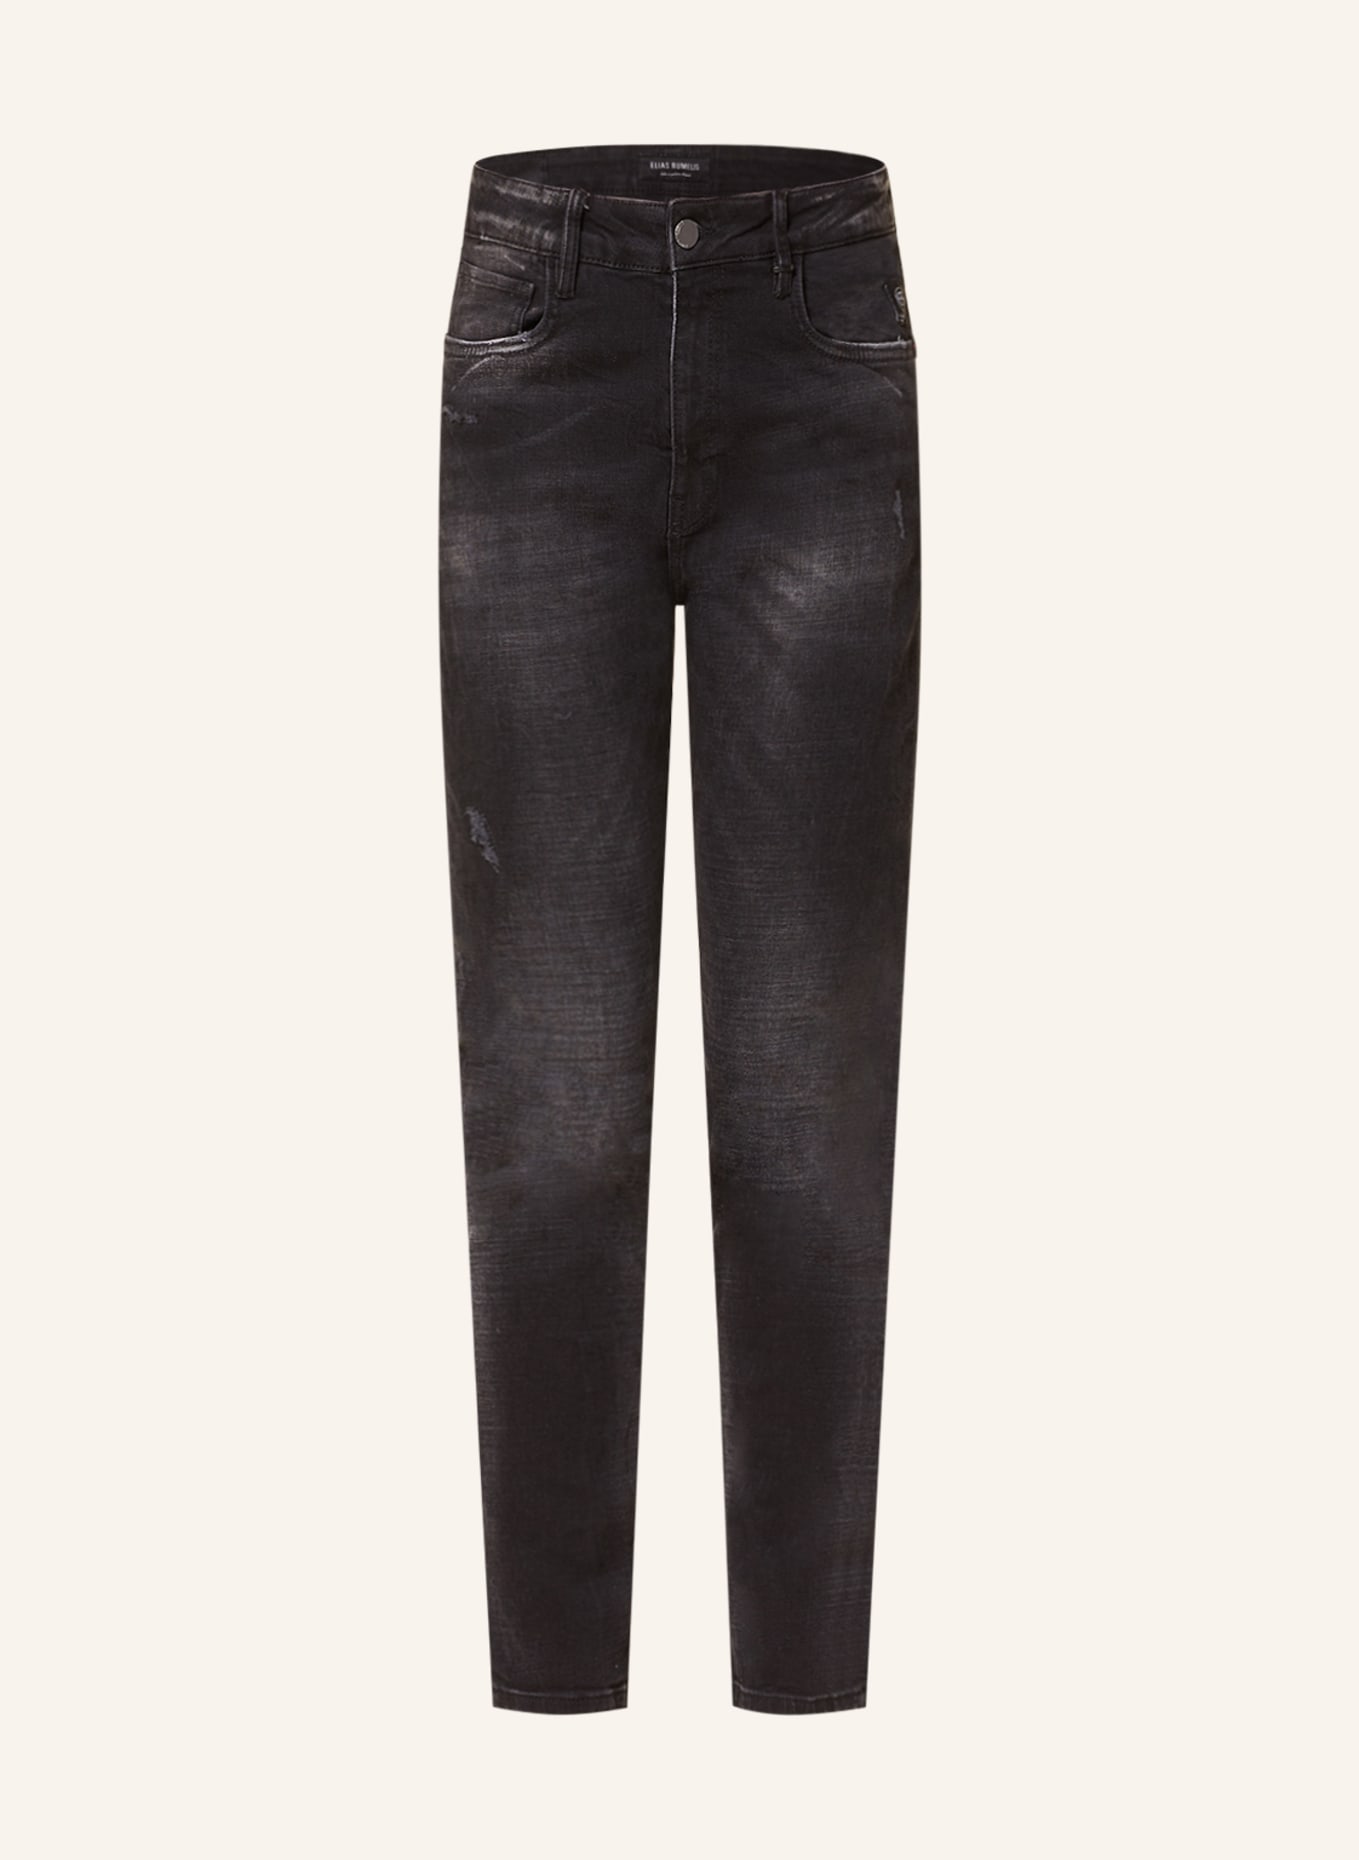 ELIAS RUMELIS 7/8 jeans ERLANI, Color: 81 BLACK (Image 1)